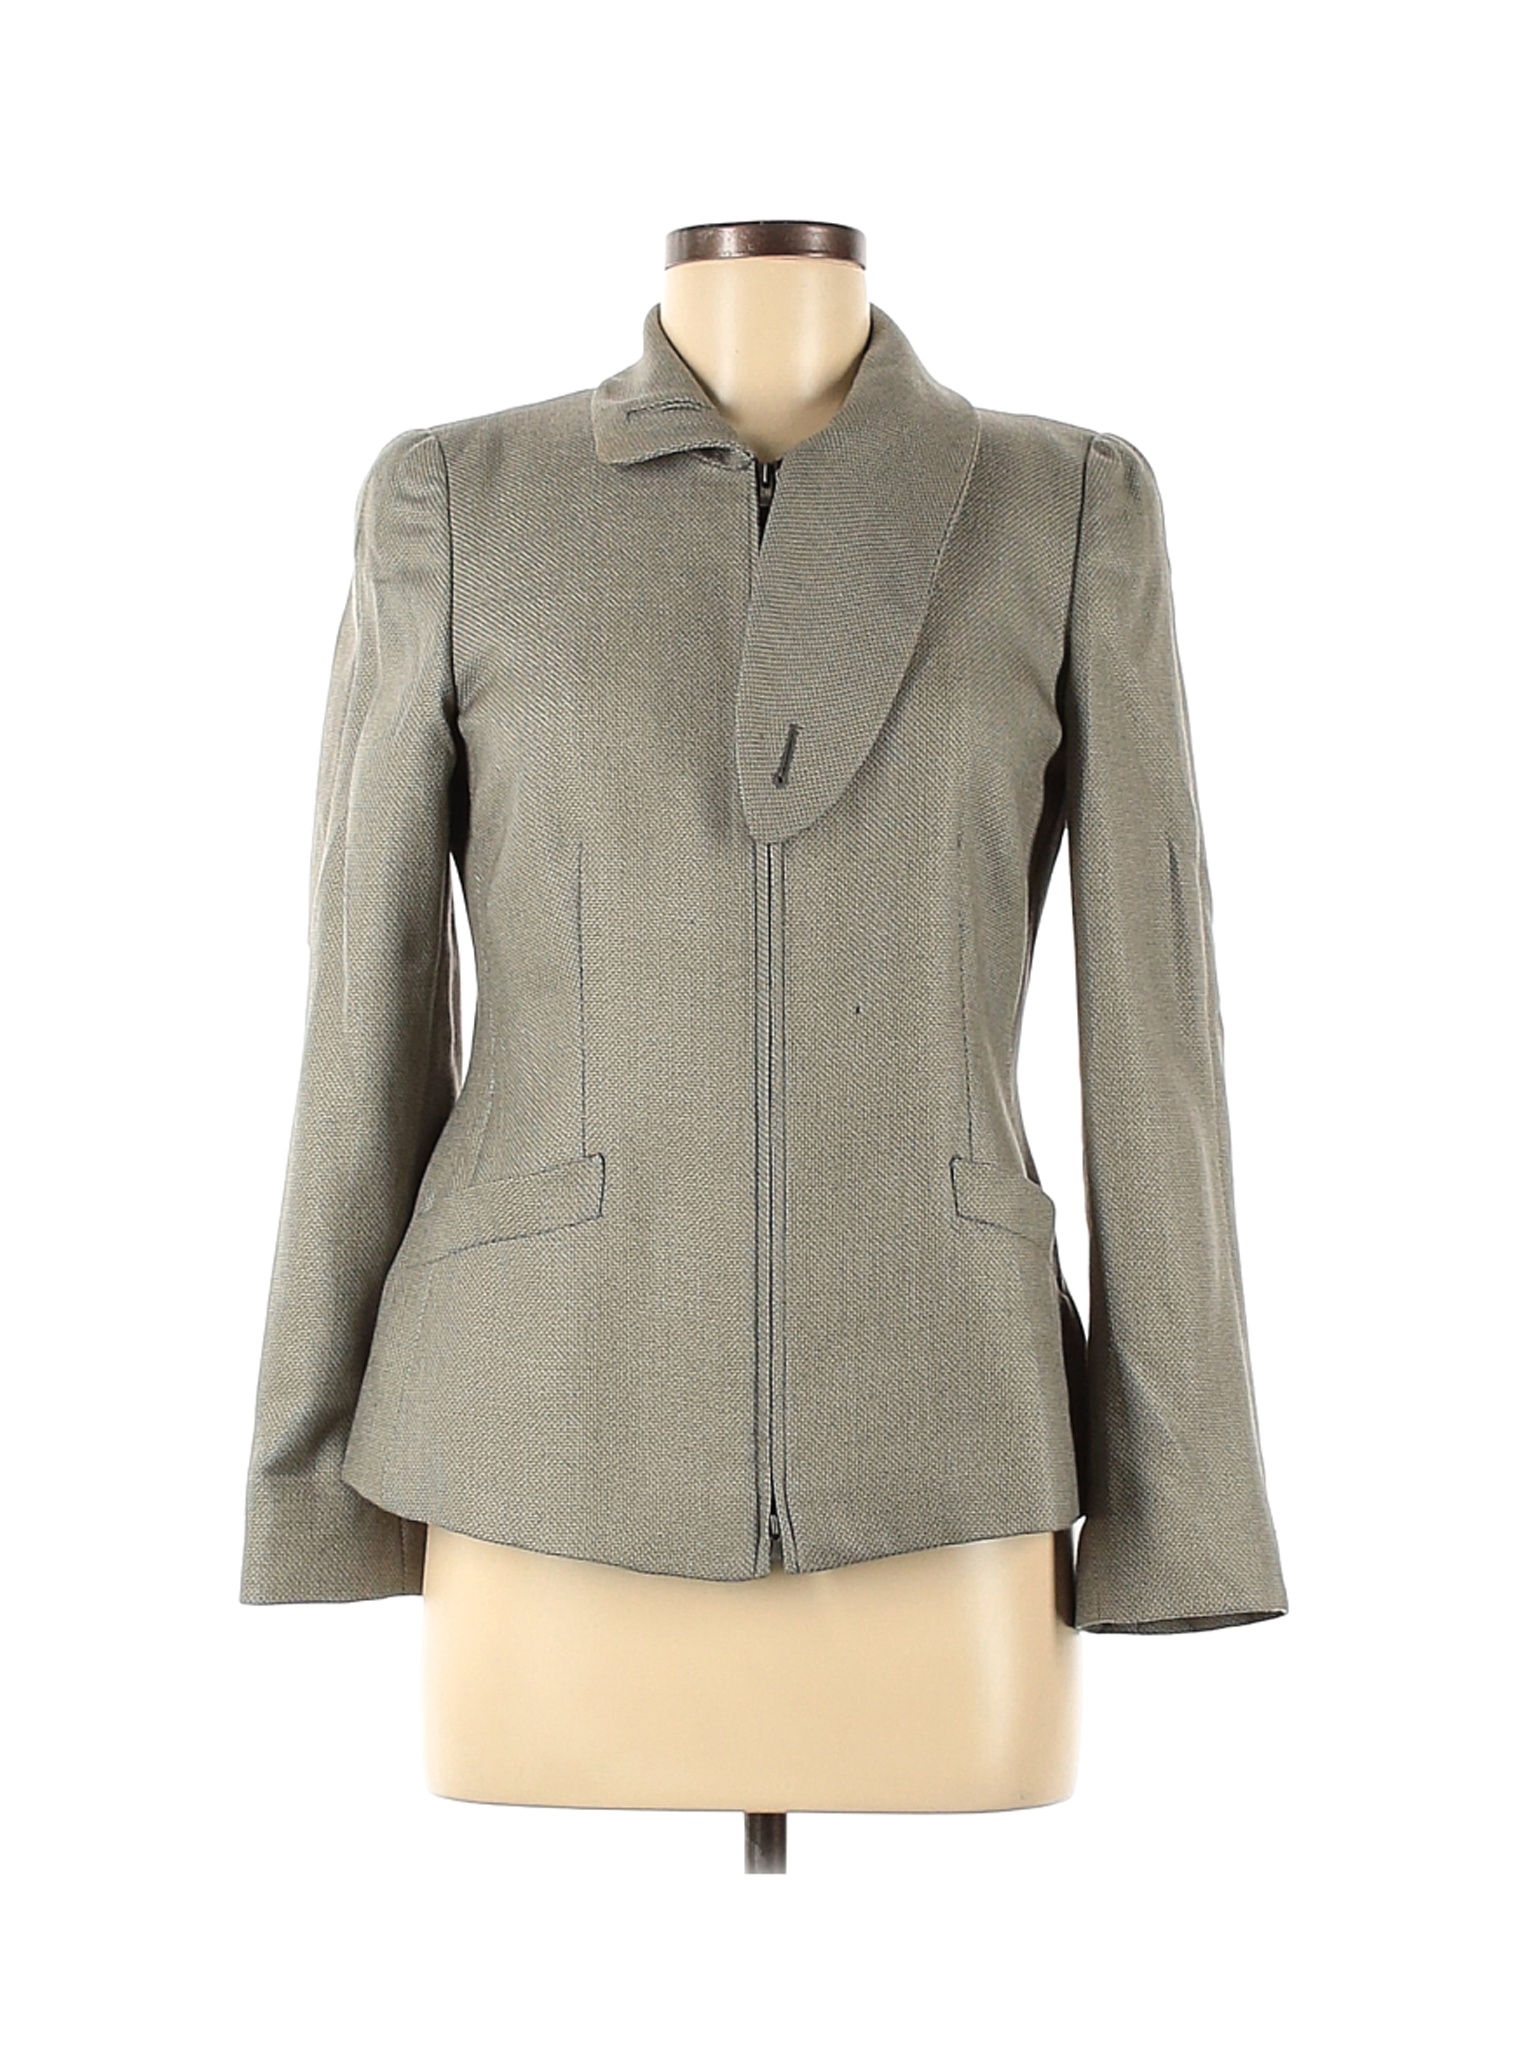 Armani Collezioni Women Gray Blazer 6 | eBay